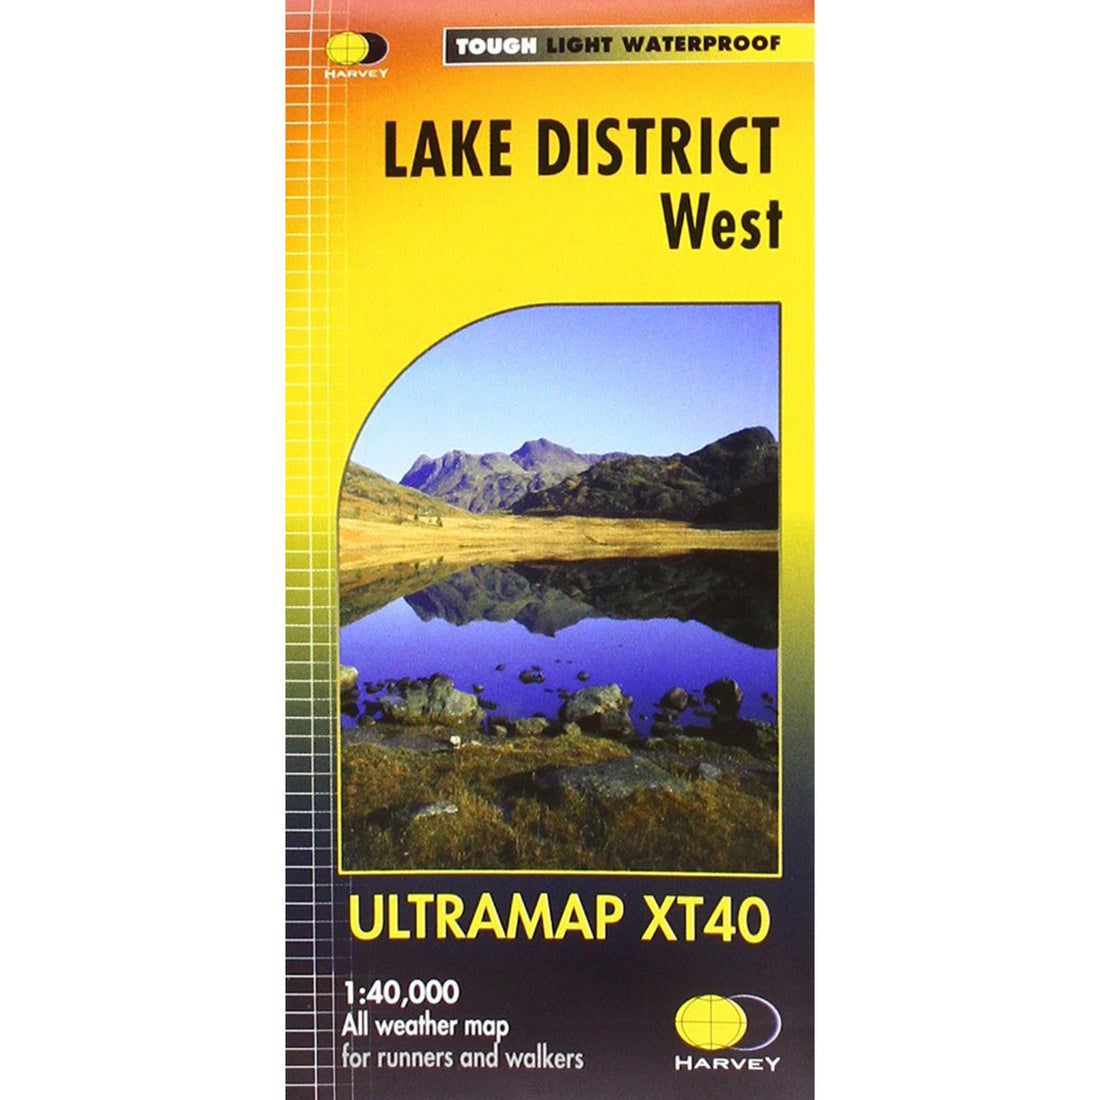 Ultramap Xt40 Map: Lake District West